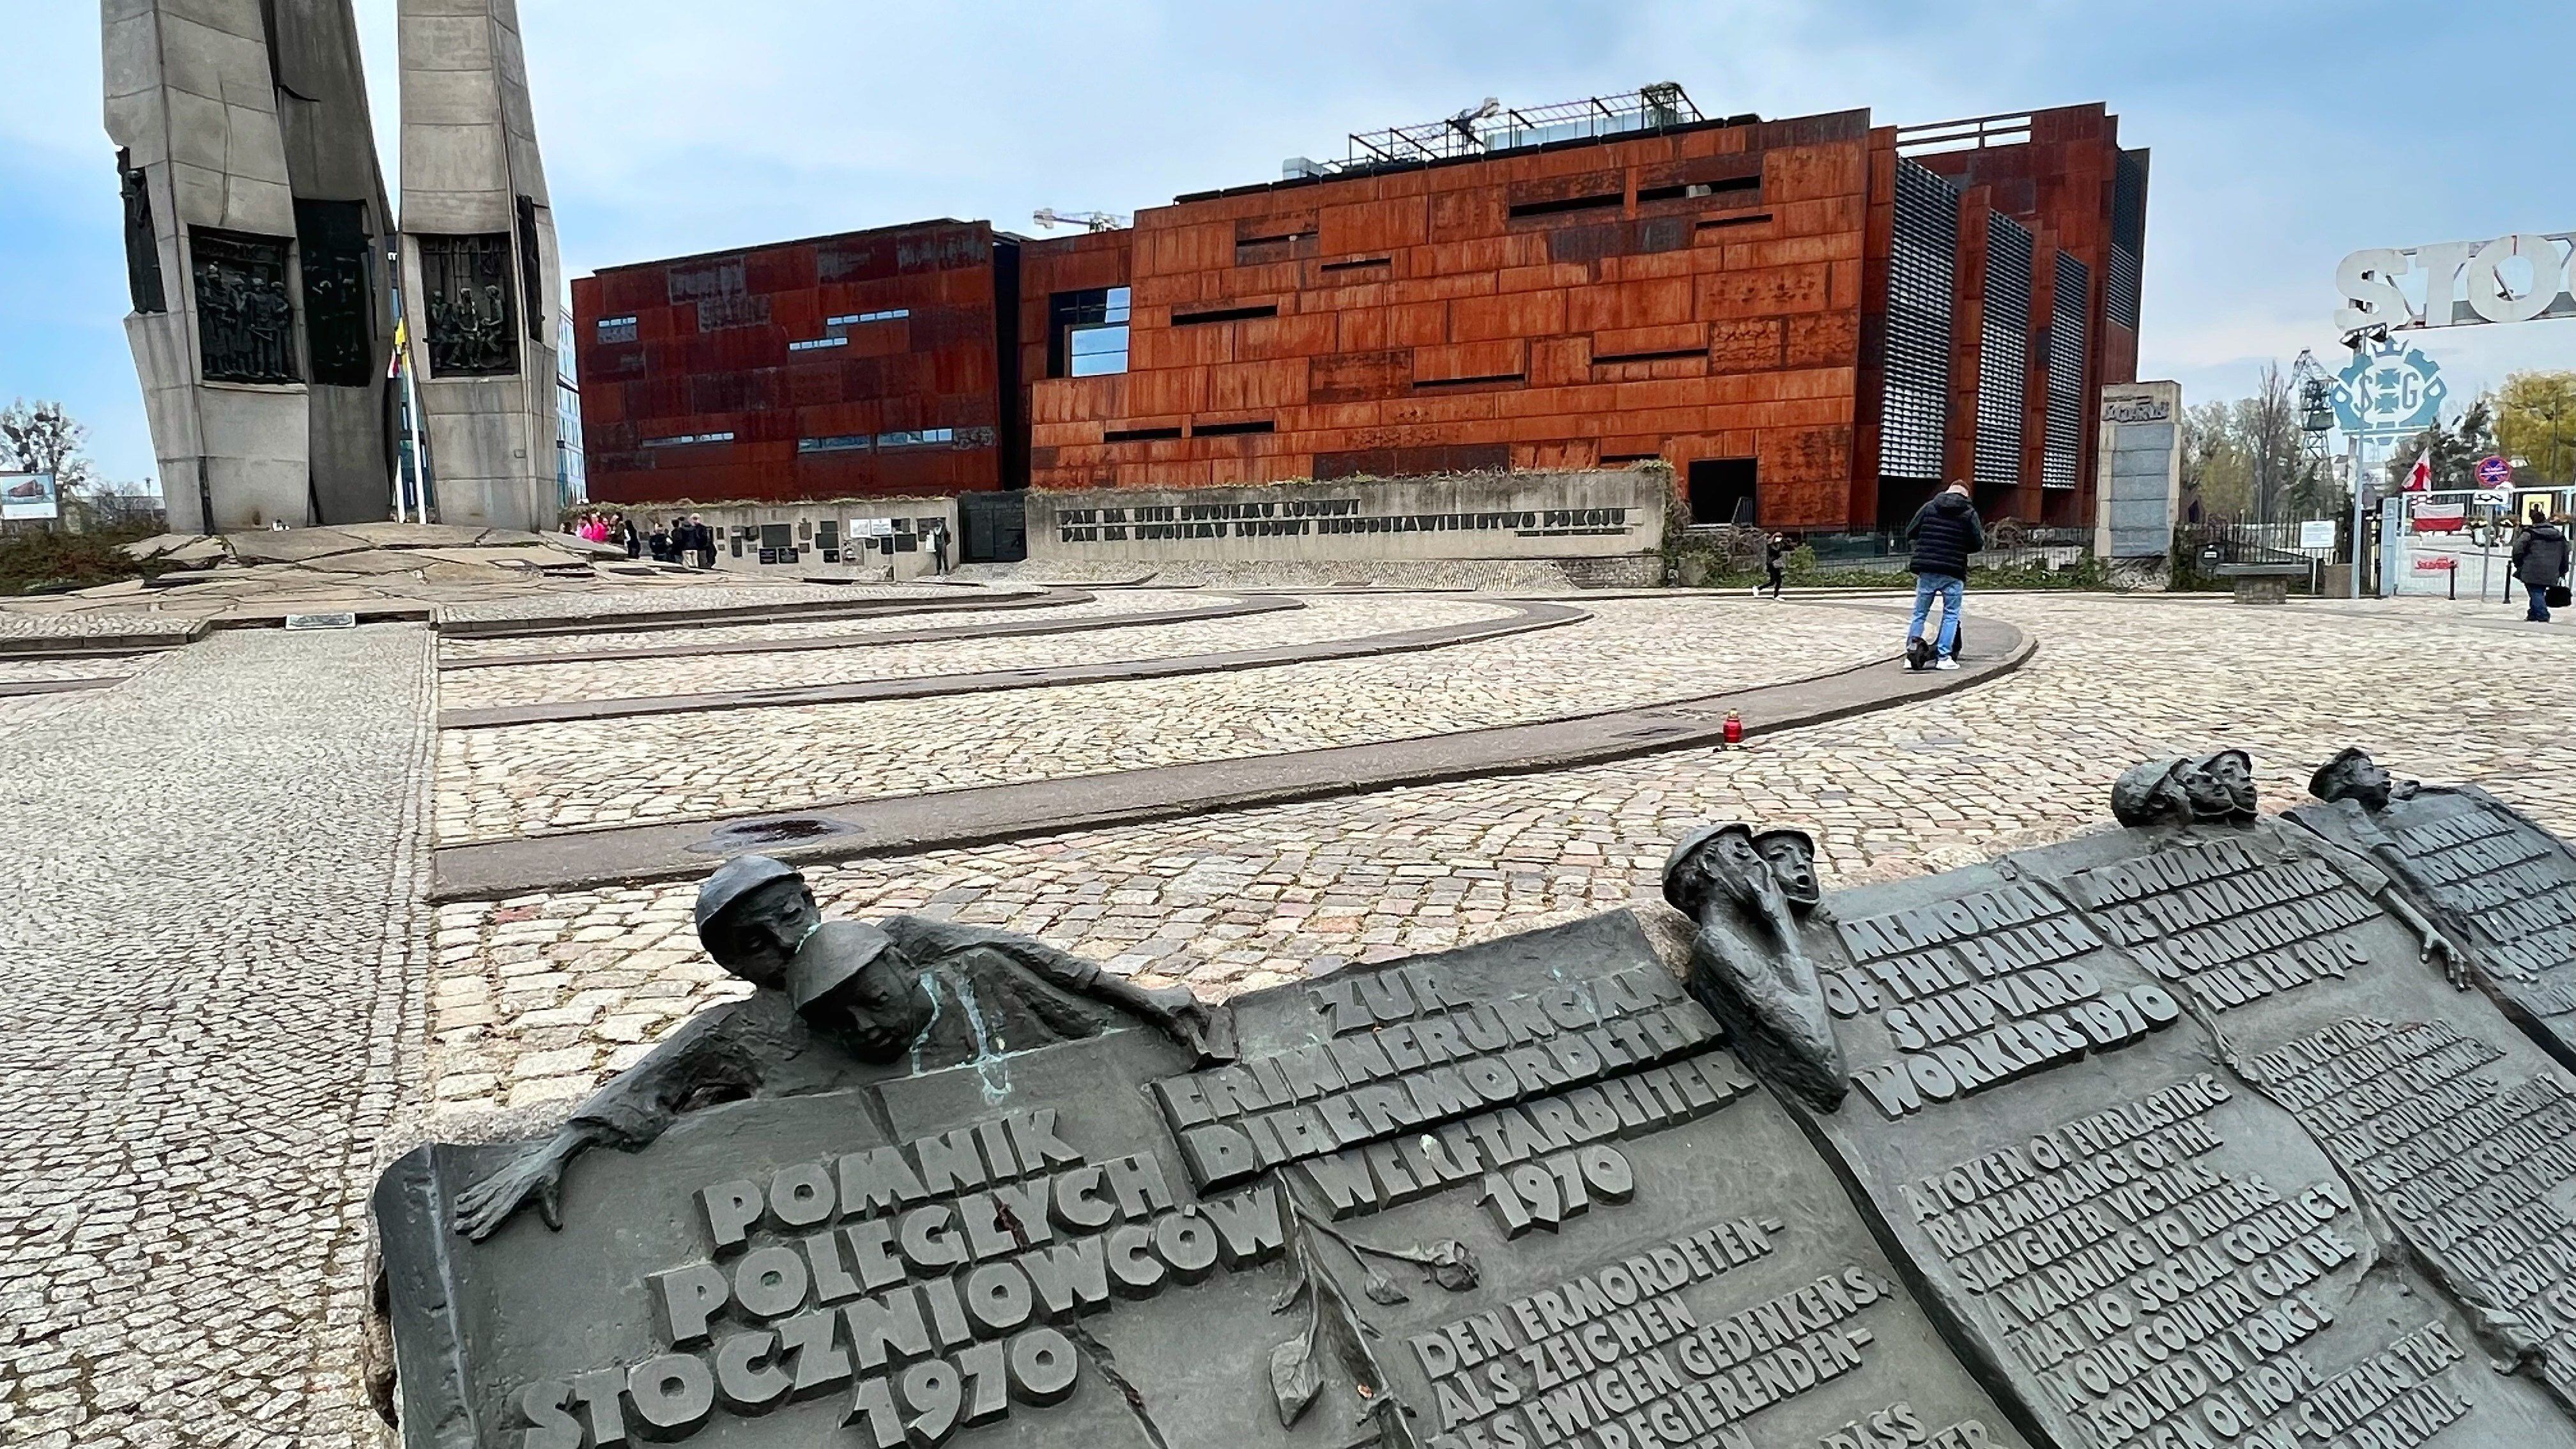 Centro Europeo de Solidarnosc, el moderno museo y centro de investigación construido en los solares del antiguo astillero de Gdansk.